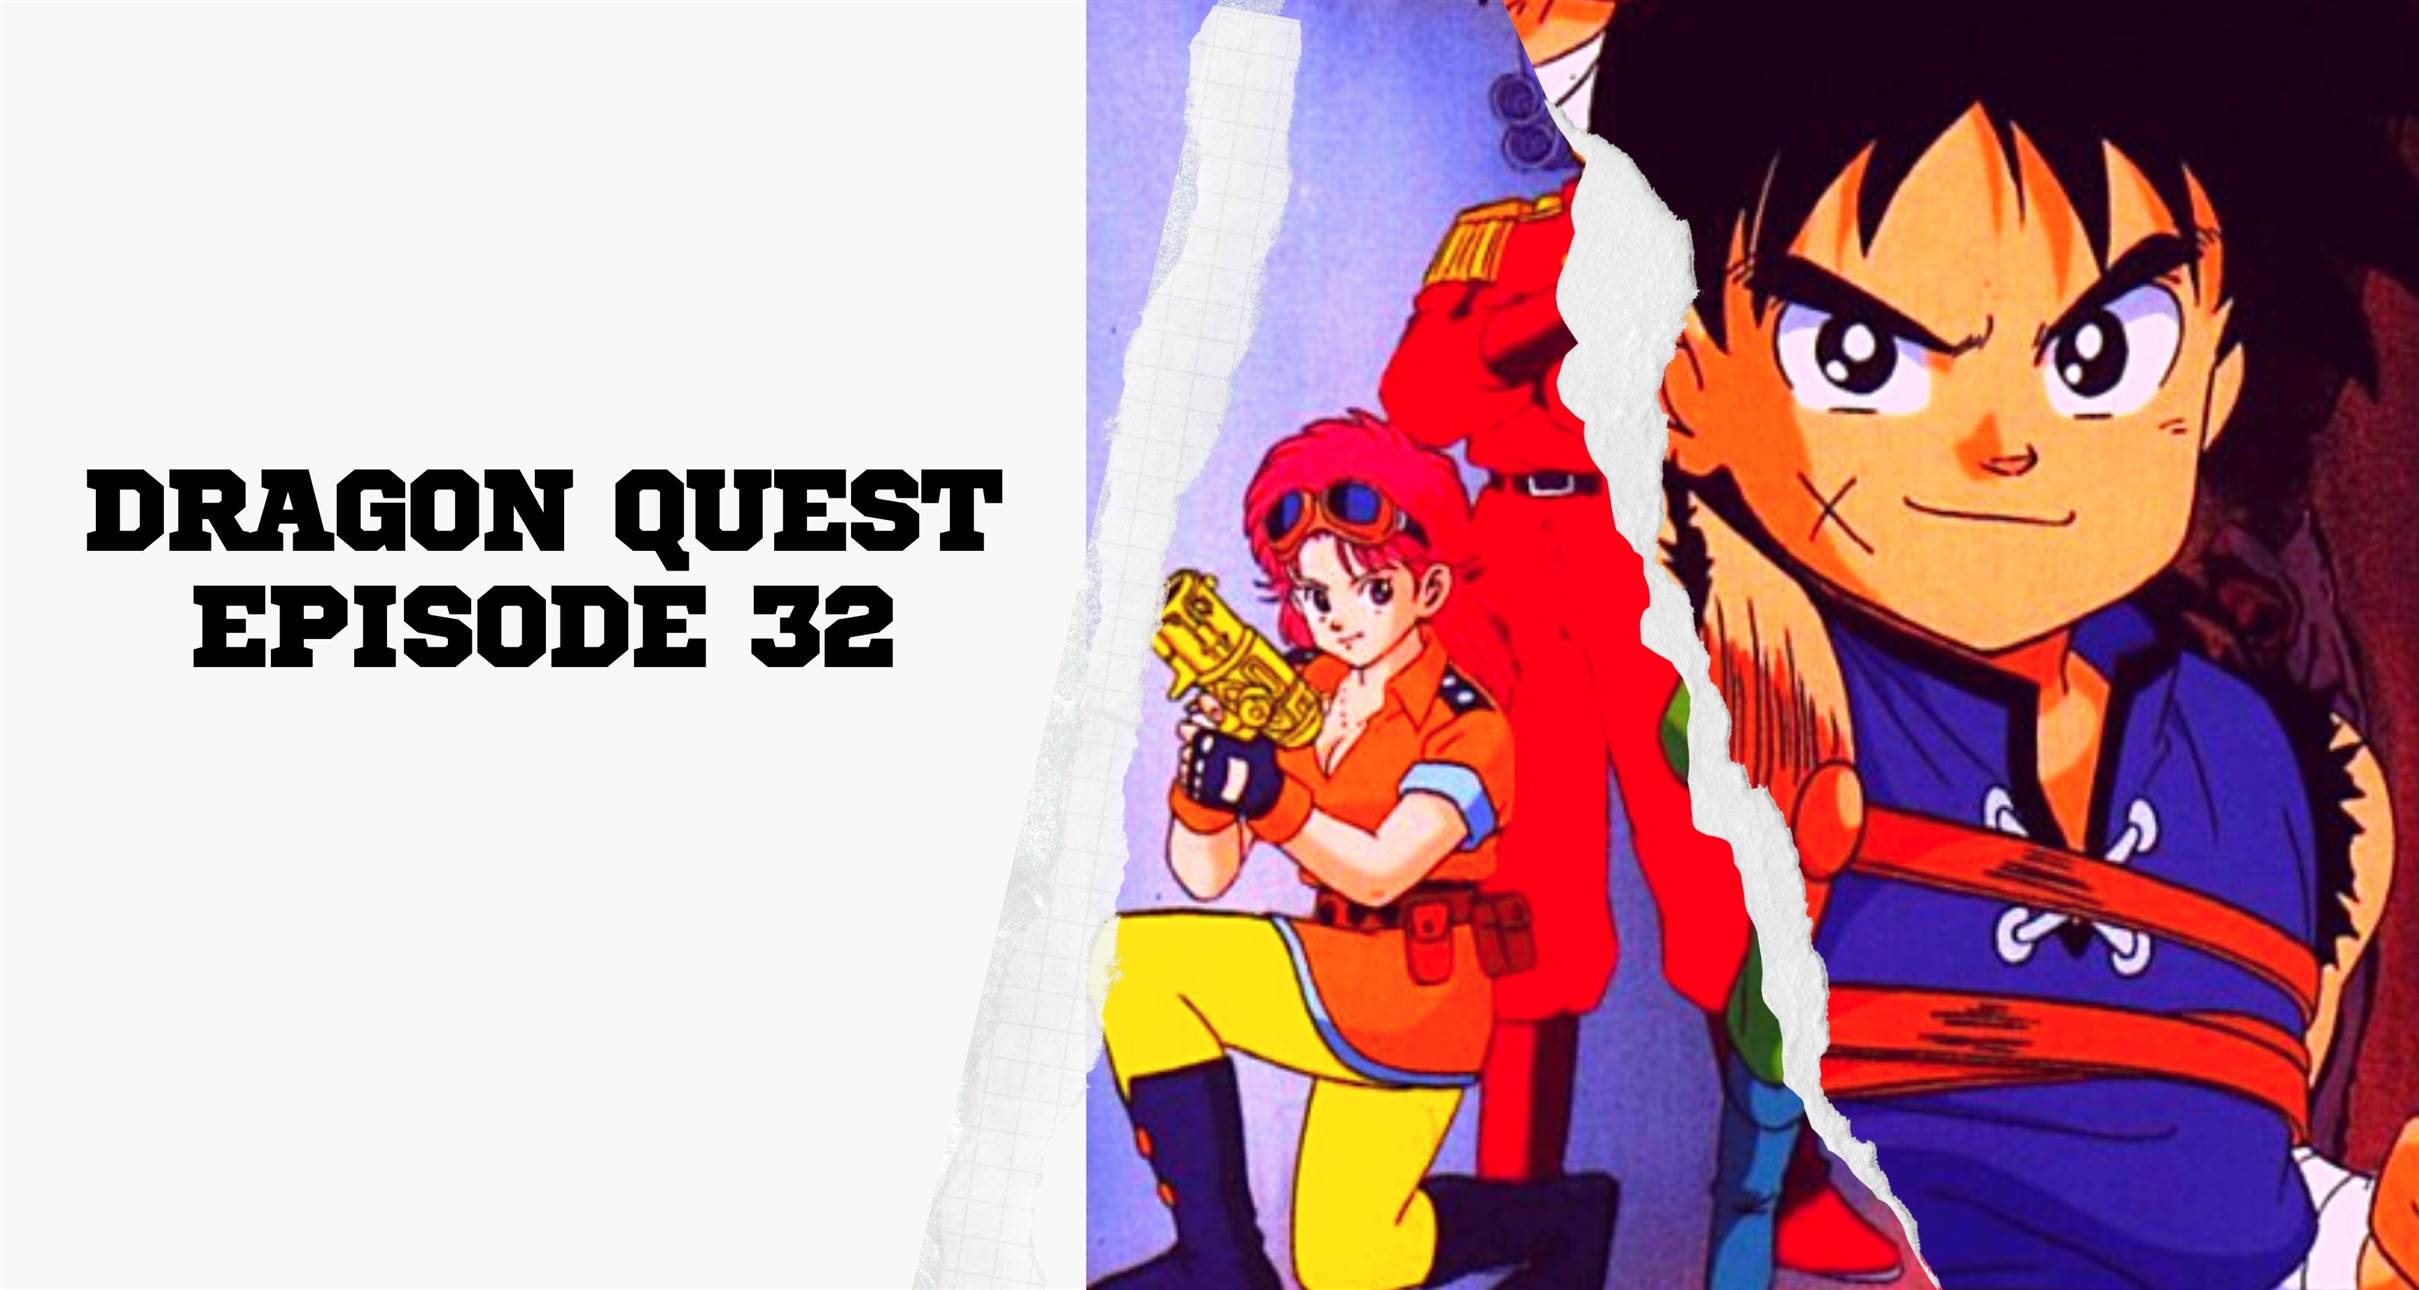 Dragon Quest Episode 32